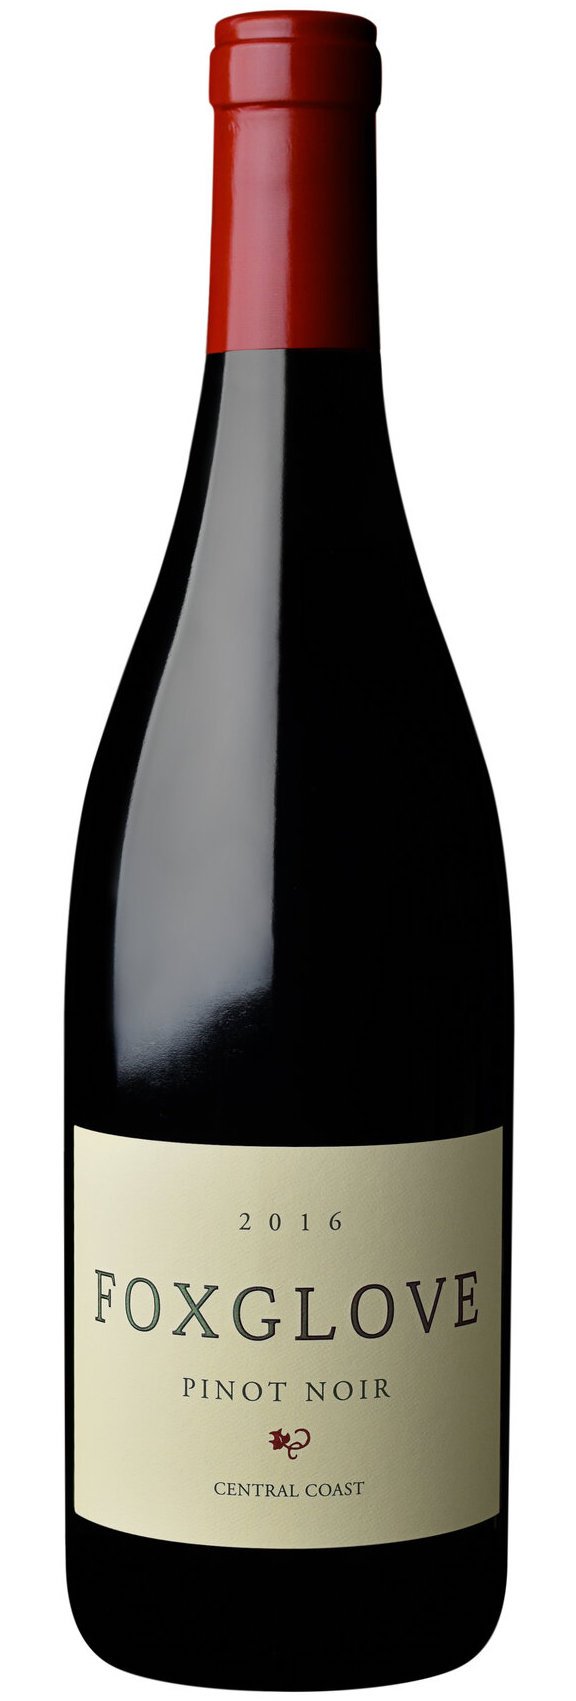 Foxglove Pinot Noir, Central Coast